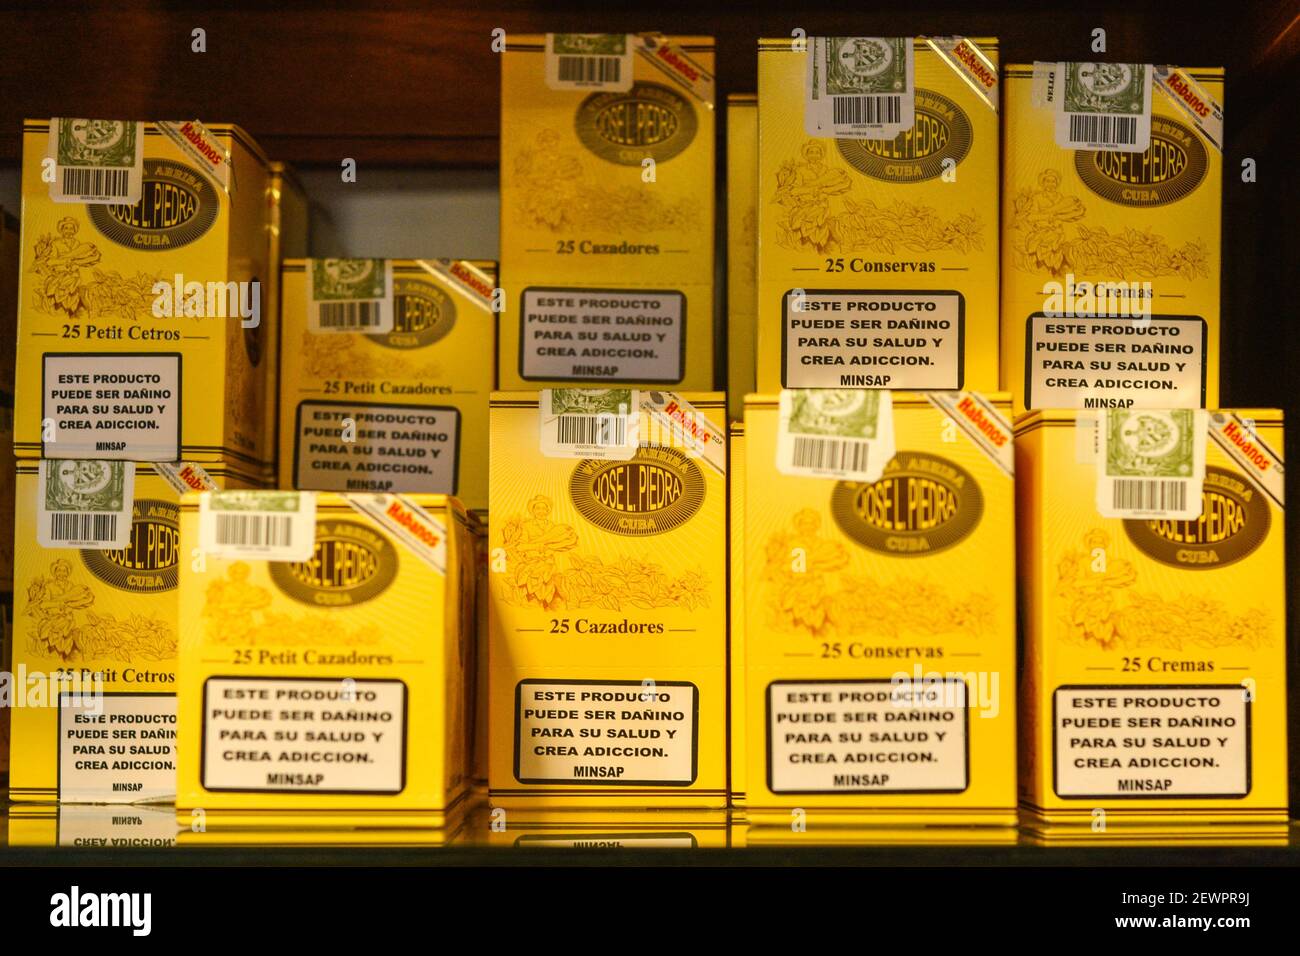 Cigarros cubanos en exhibición en una ventana de tienda. Esos cigarros son rodados de hojas de tabaco que se encuentran en todo el país de Cuba. El relleno, el aglutinante y la envoltura pueden provenir de diferentes porciones de la isla. Toda la producción de cigarros en Cuba es controlada por el gobierno cubano, y cada Marca puede ser rodada en varias fábricas diferentes en Cuba. Cuba produce cigarros hechos a mano y a máquina. Todas las cajas y etiquetas están marcadas como Hecho en Cuba. Los cigarros hechos a máquina terminados a mano añaden a Hecho un mano, mientras que los puros completamente hechos a mano dicen totalmente un mano en el texto del guión, sin embargo Foto de stock